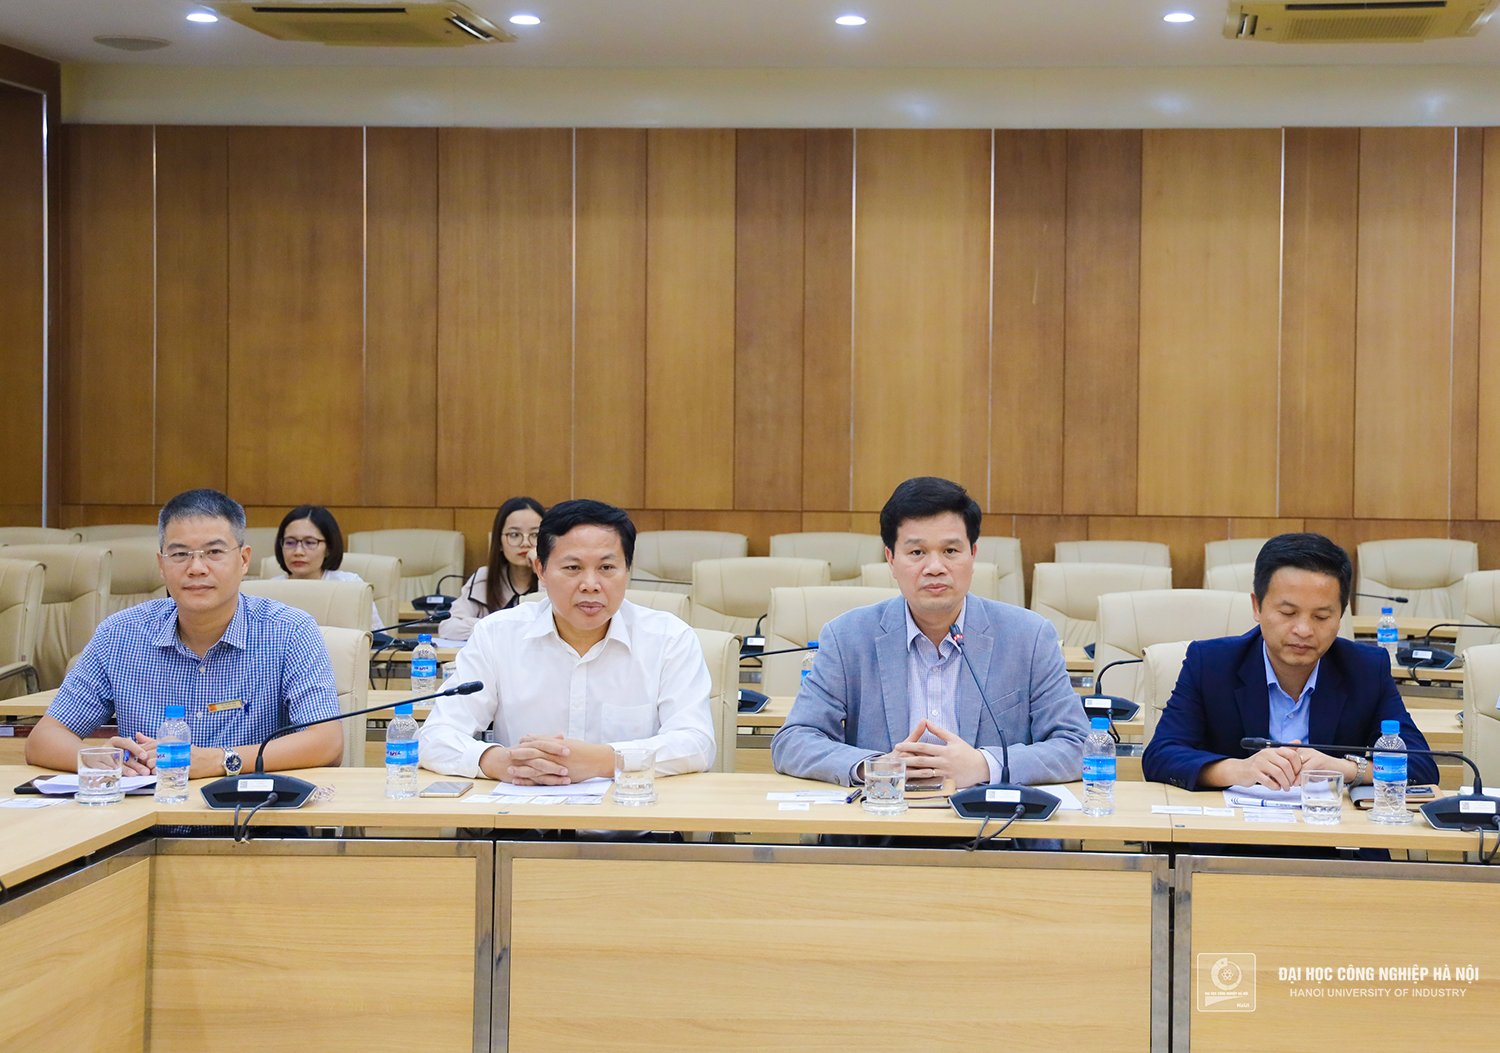 Hanoi University of Industry establishes cooperative relationship with Wakayama province, Japan